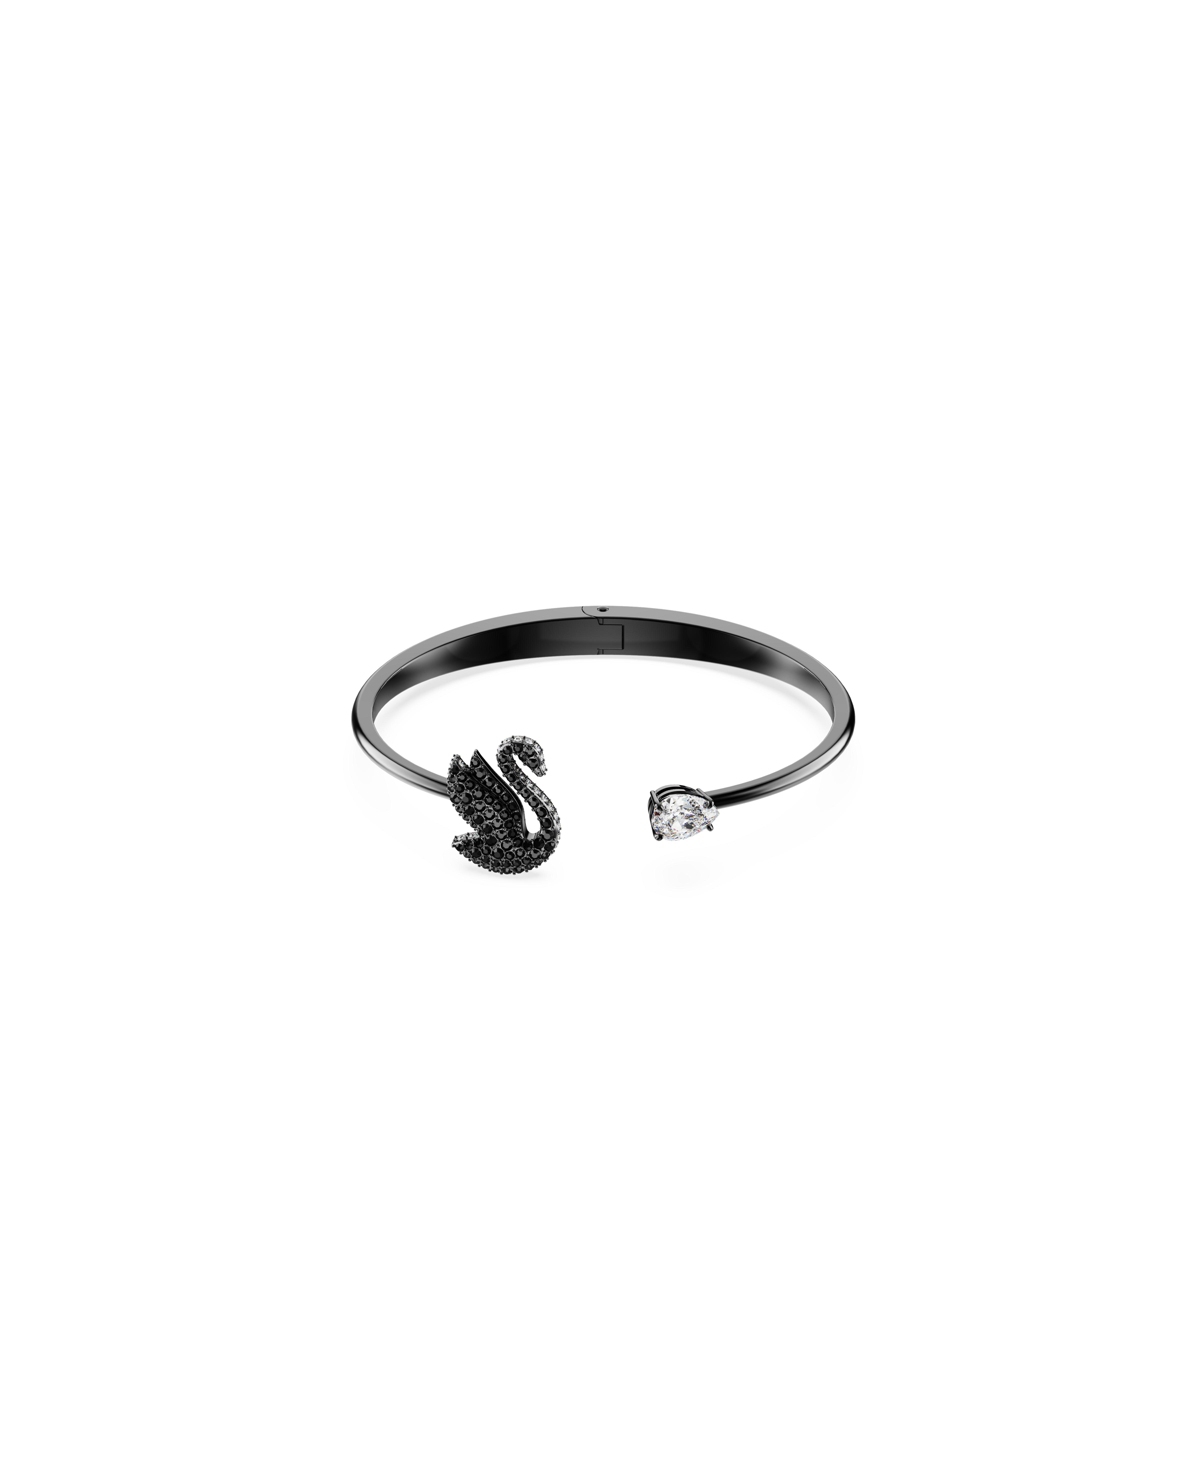 Shop Swarovski Swan, Black, Ruthenium Plated Iconic Swan Bangle Bracelet